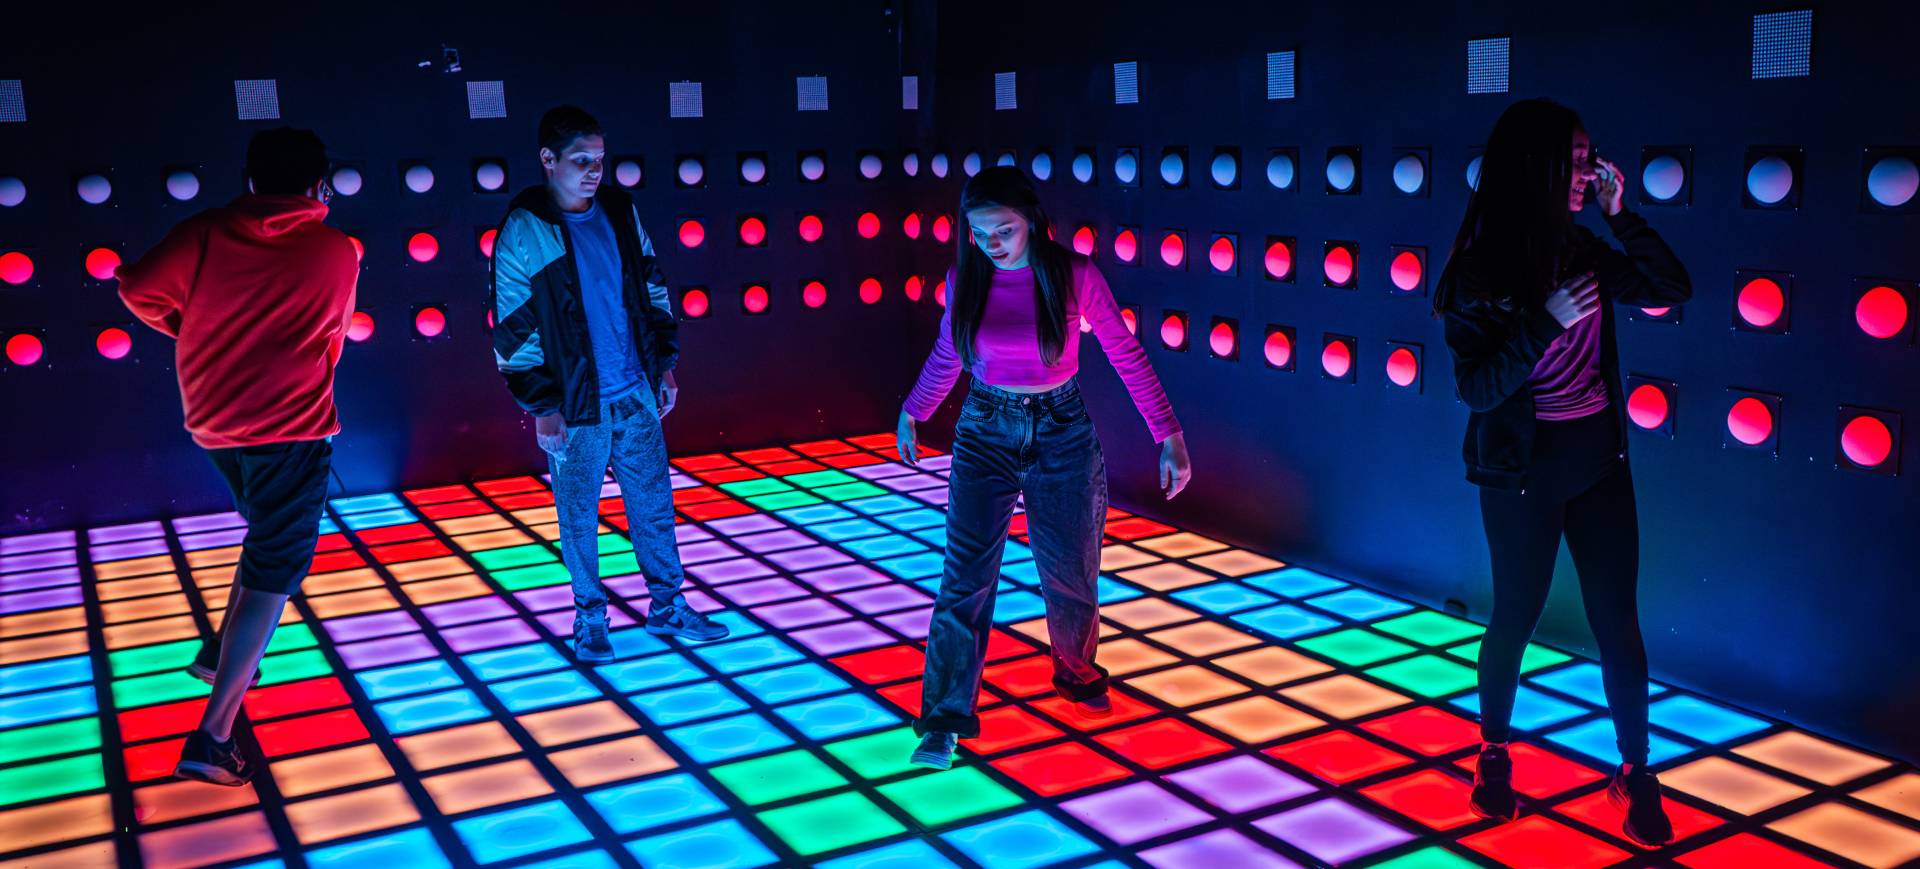 Imagem de divulgação da Arcade Haus, um parque tecnológico de imersão, equipado com botões e luzes de LED coloridos, que aparecem no chão e paredes da foto e com os quais quatro jovens estão interagindo